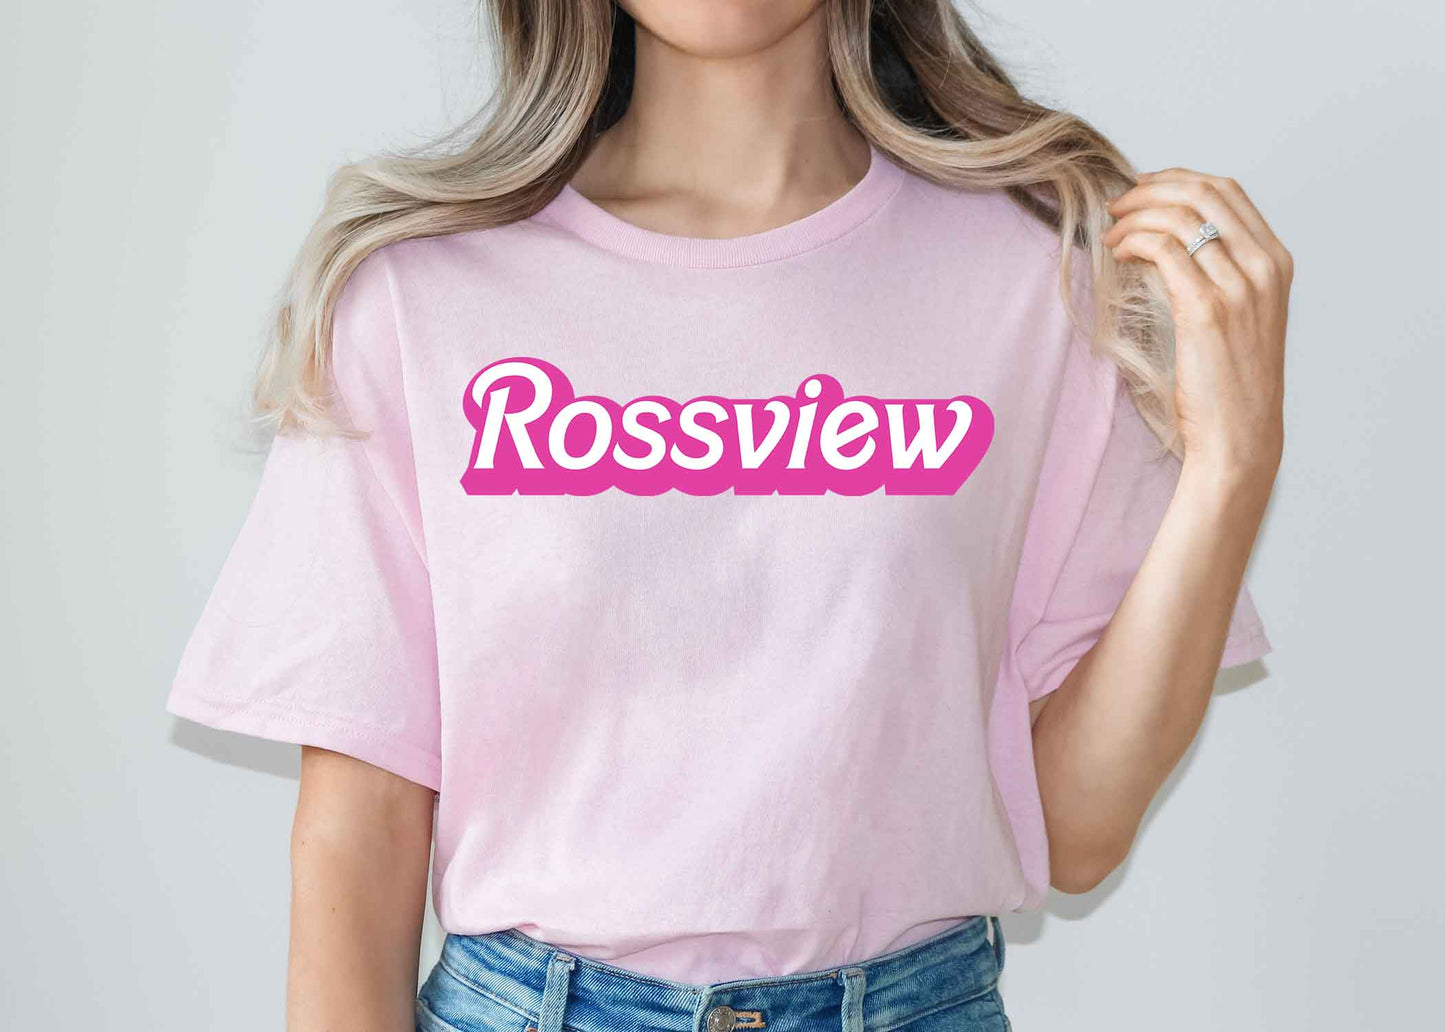 Rossview pink shirt